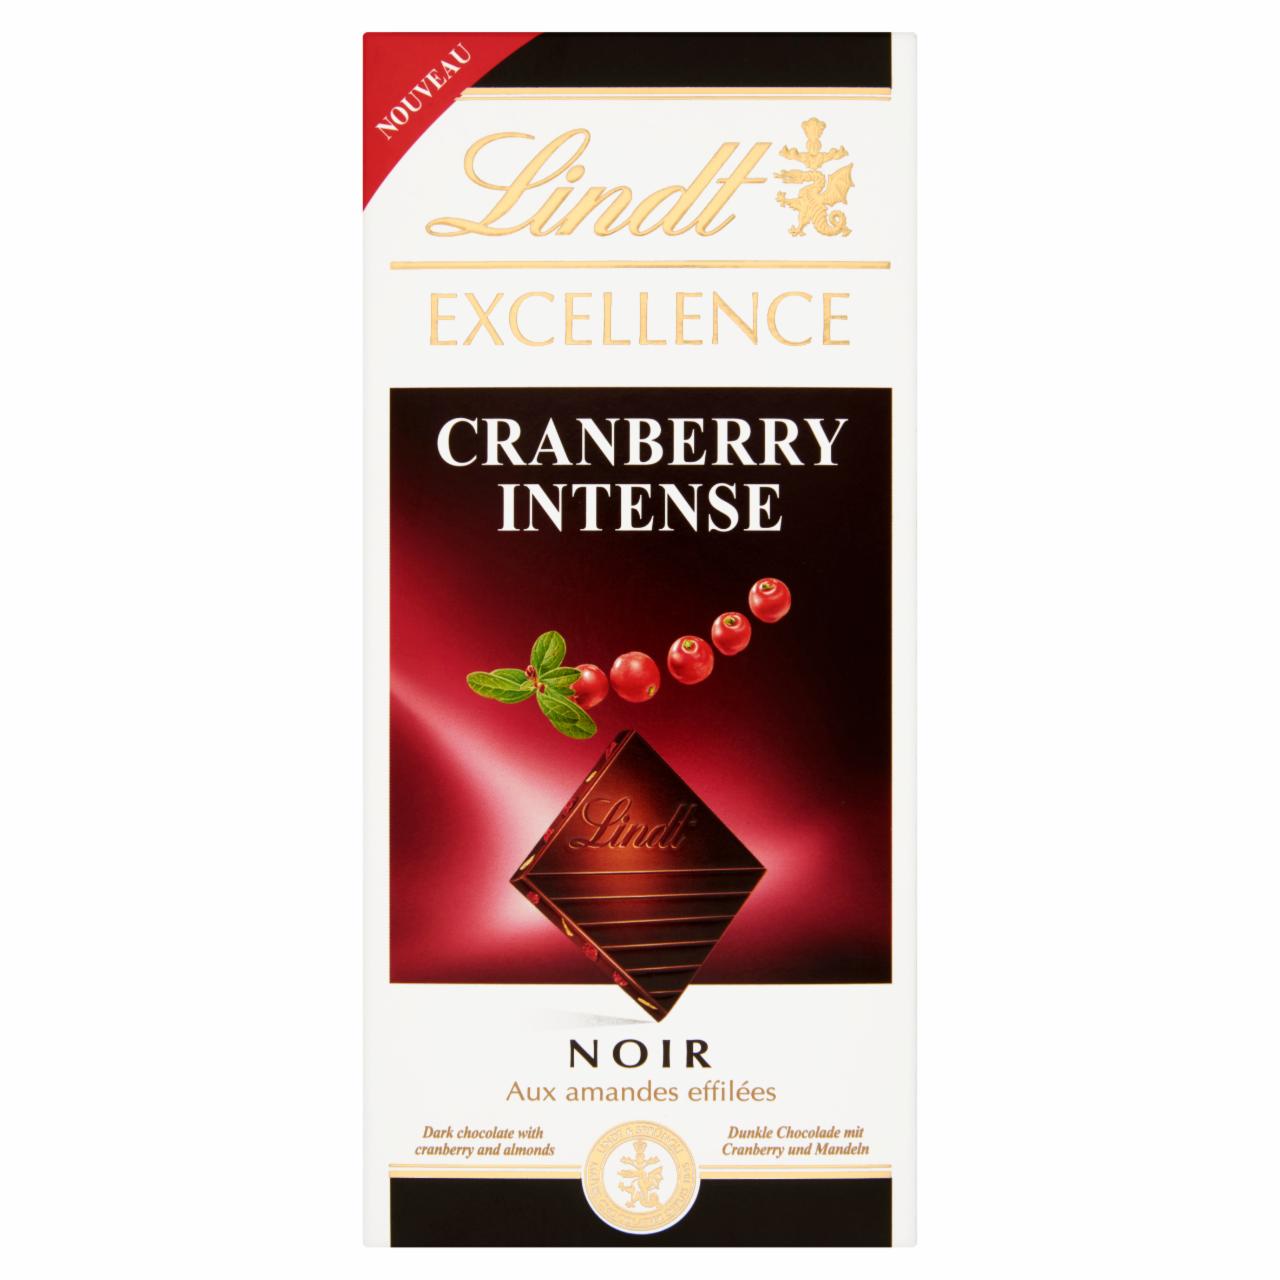 Képek - Lindt Excellence Cranberry Intense étcsokoládé tőzegáfonya és mandula darabkákkal 100 g